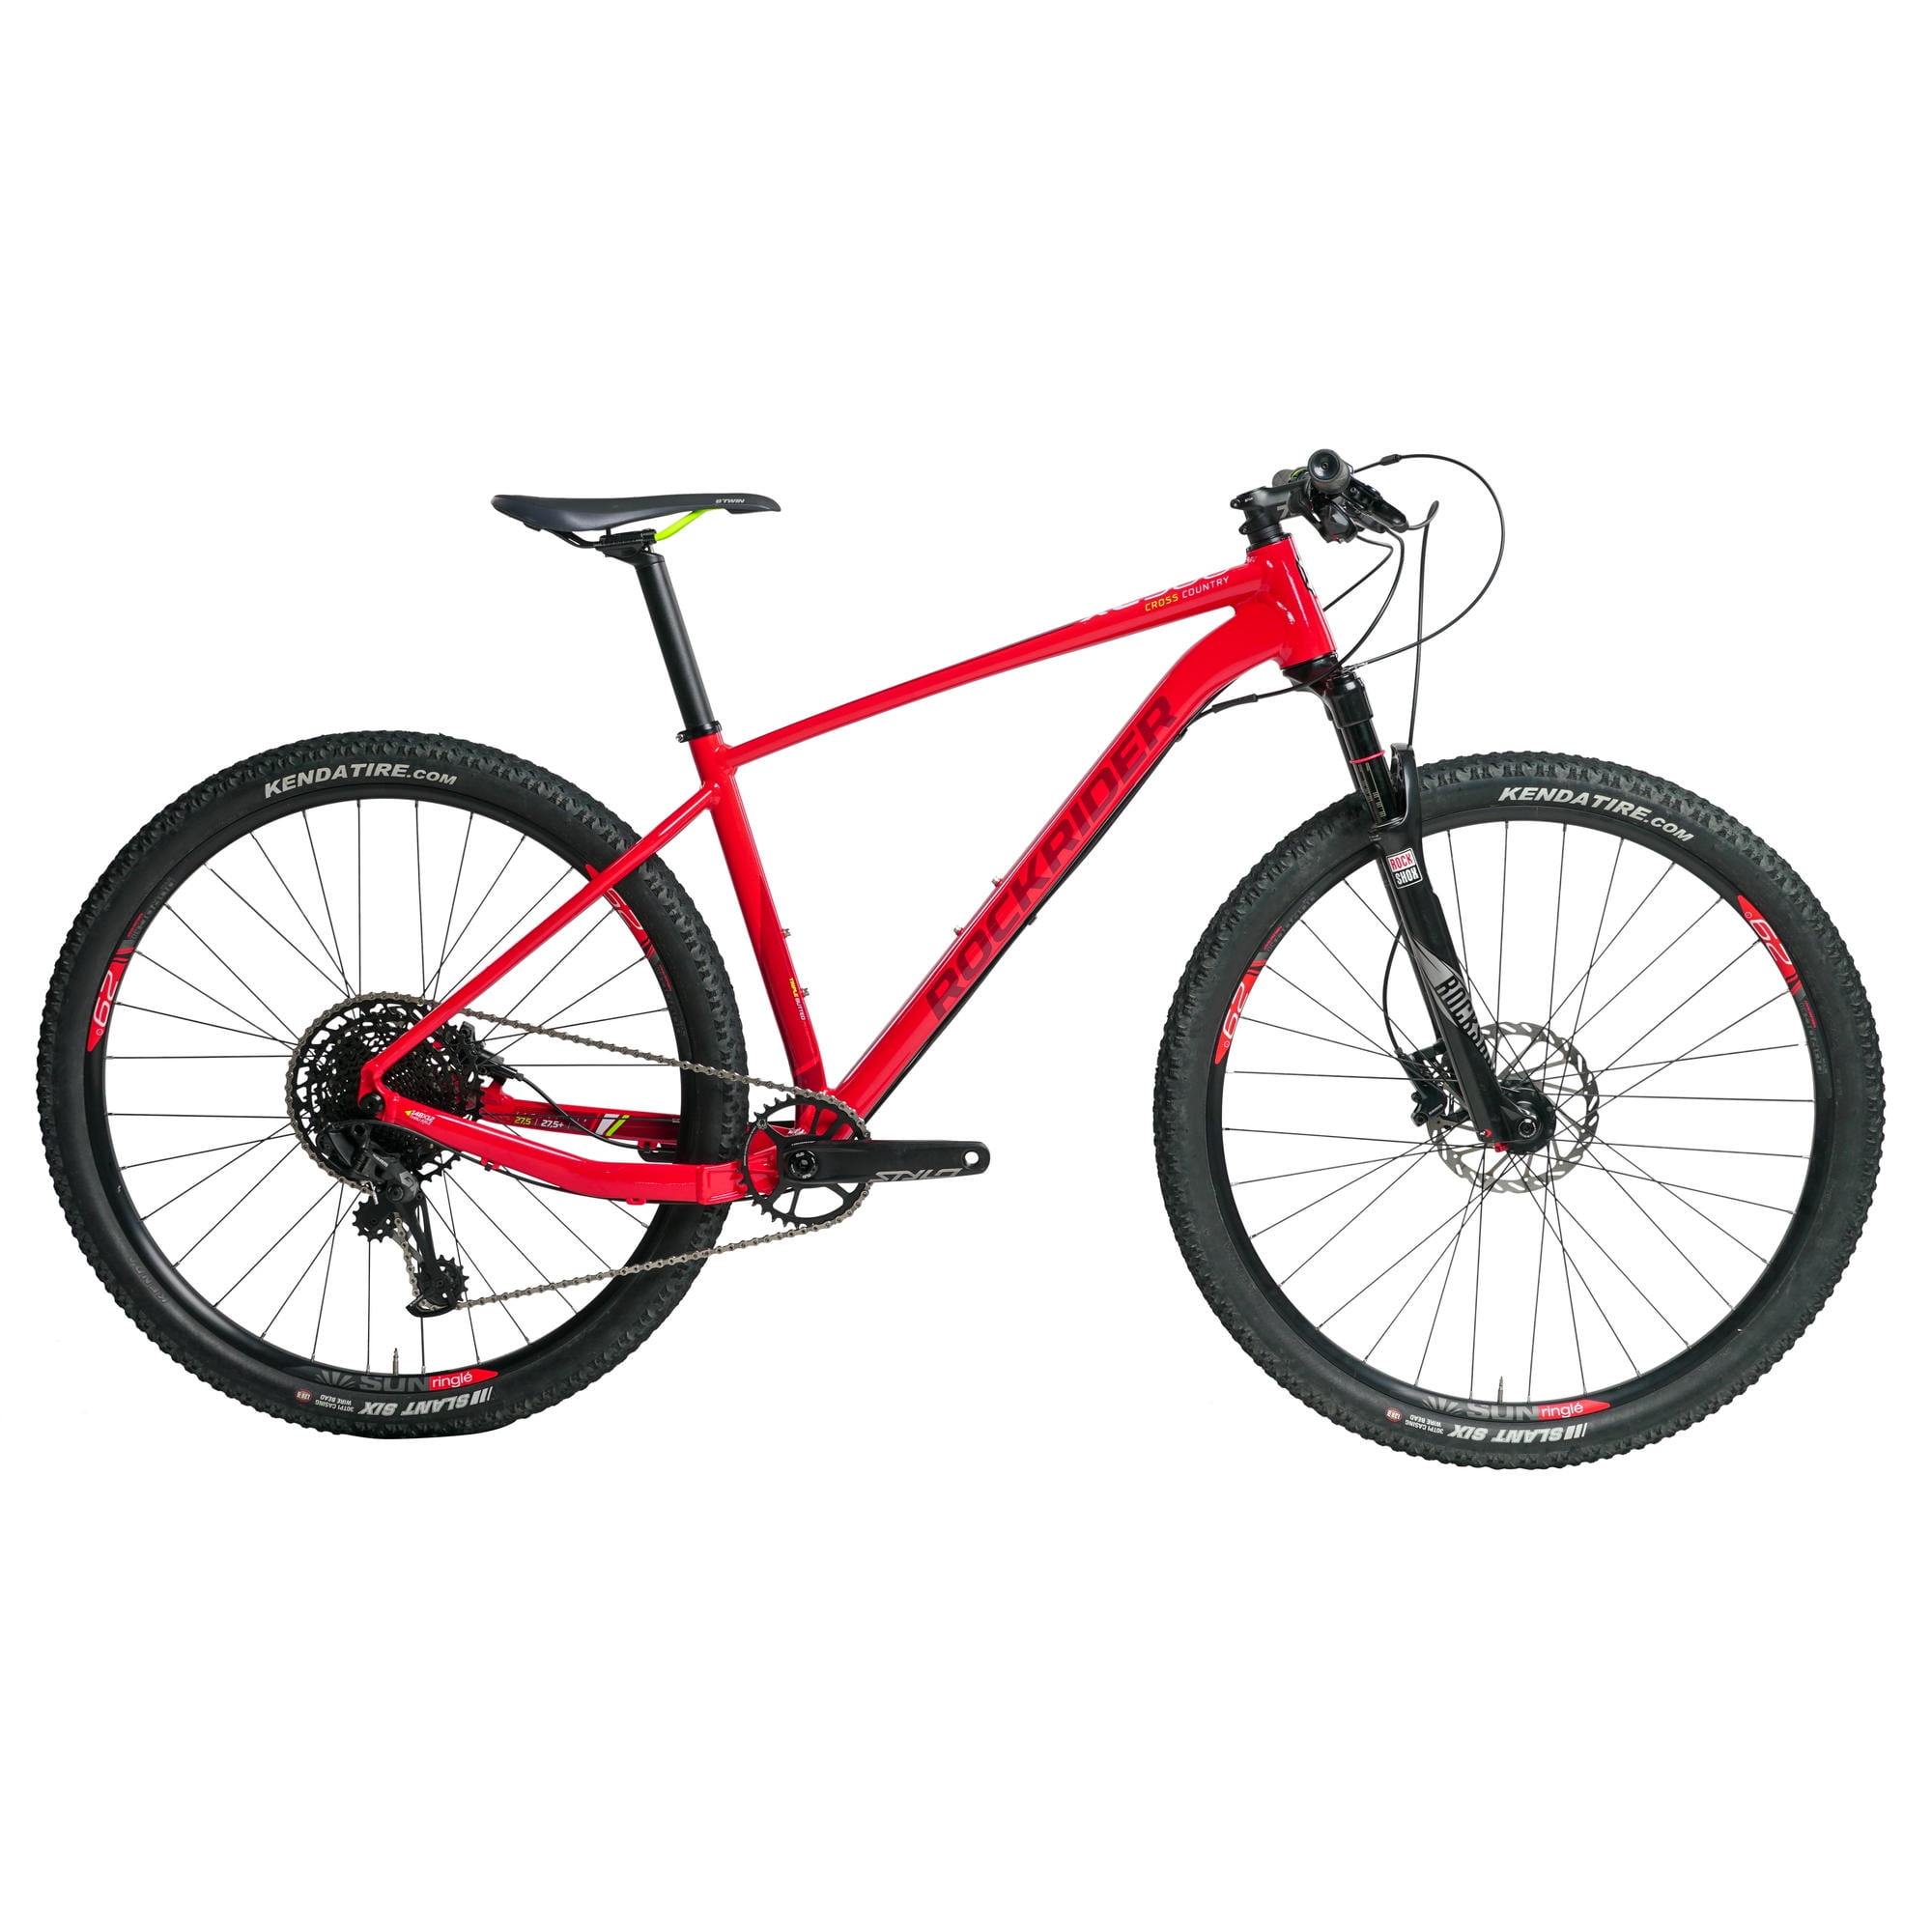 DECATHLON - Mountain Bike XC 500 - L 